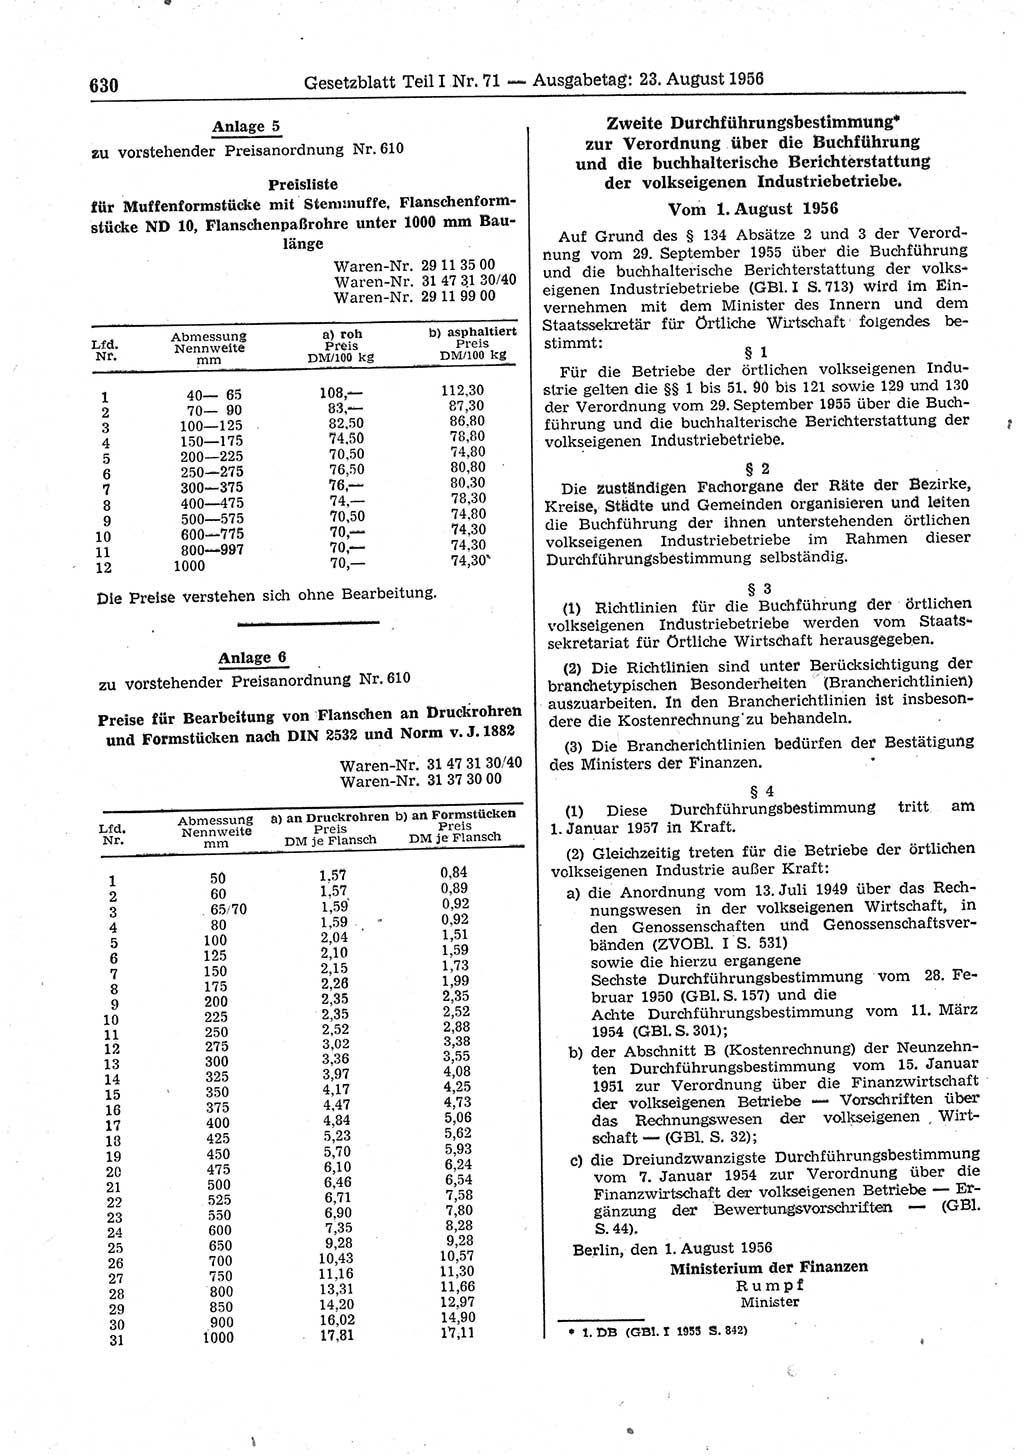 Gesetzblatt (GBl.) der Deutschen Demokratischen Republik (DDR) Teil Ⅰ 1956, Seite 630 (GBl. DDR Ⅰ 1956, S. 630)